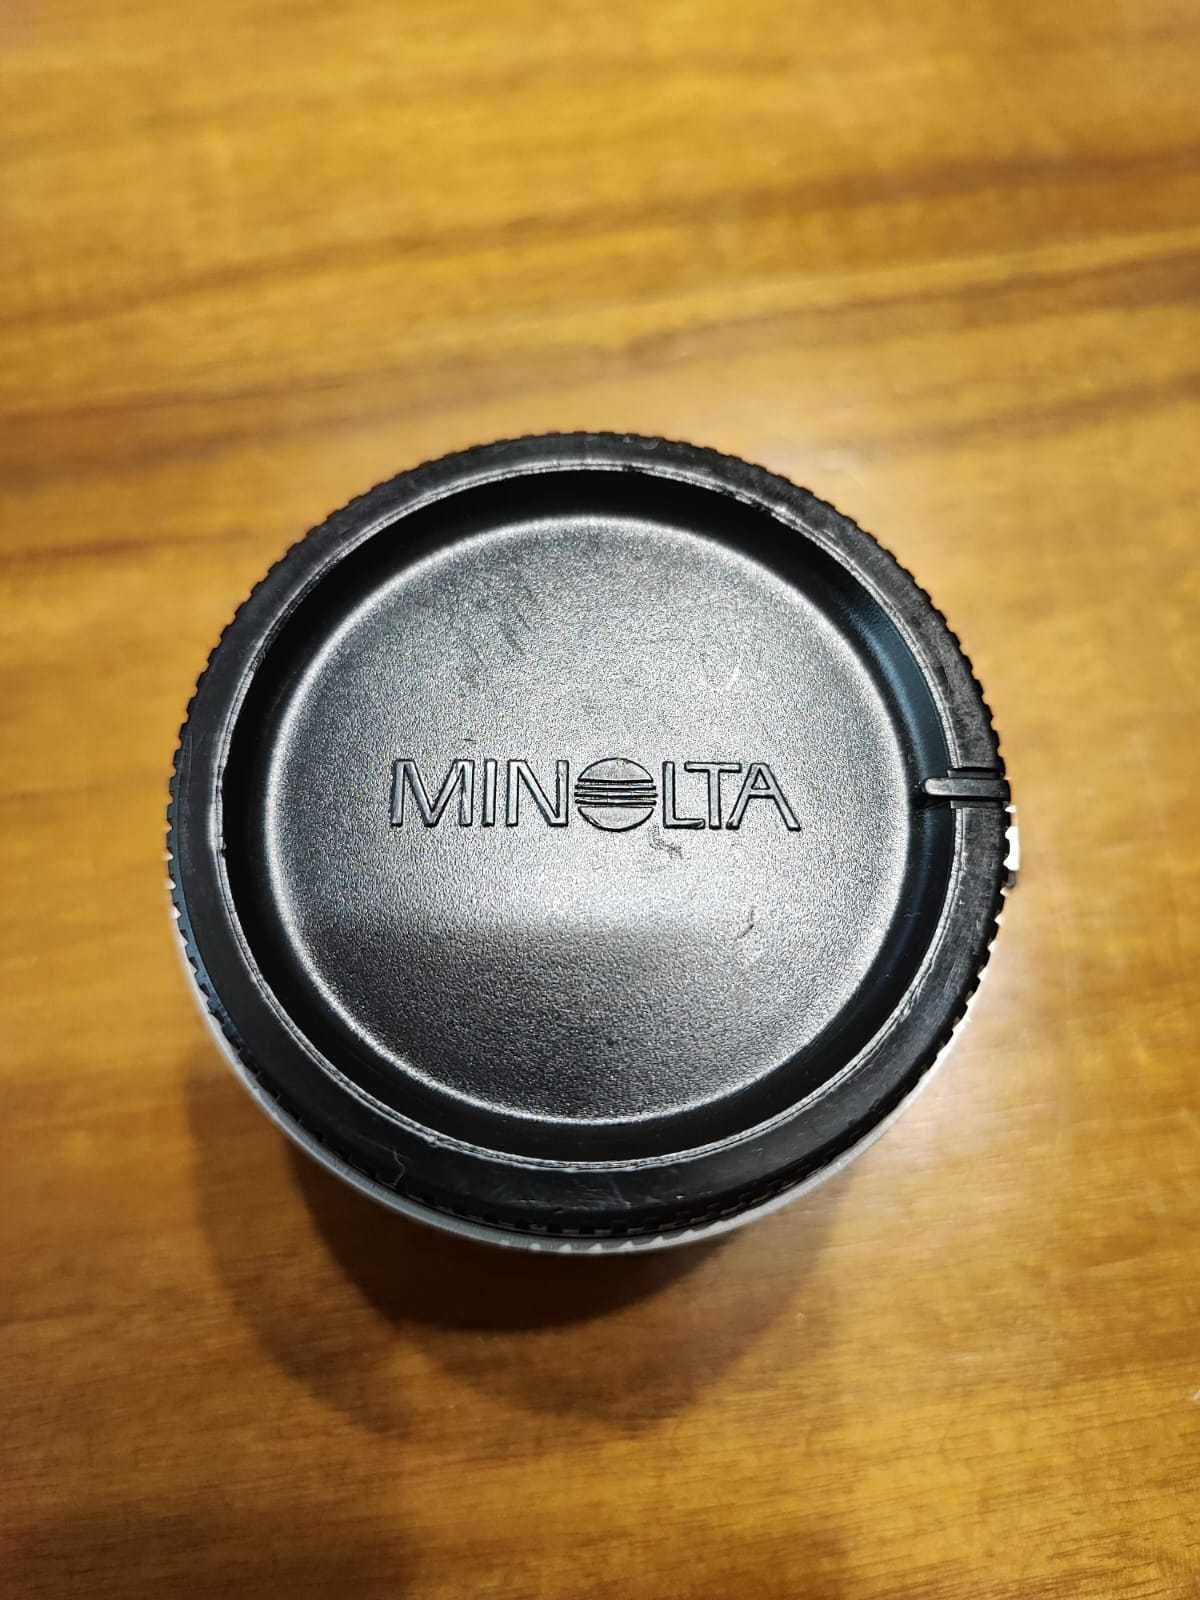 Minolta Auto Focus Tele-Converter 1.4x